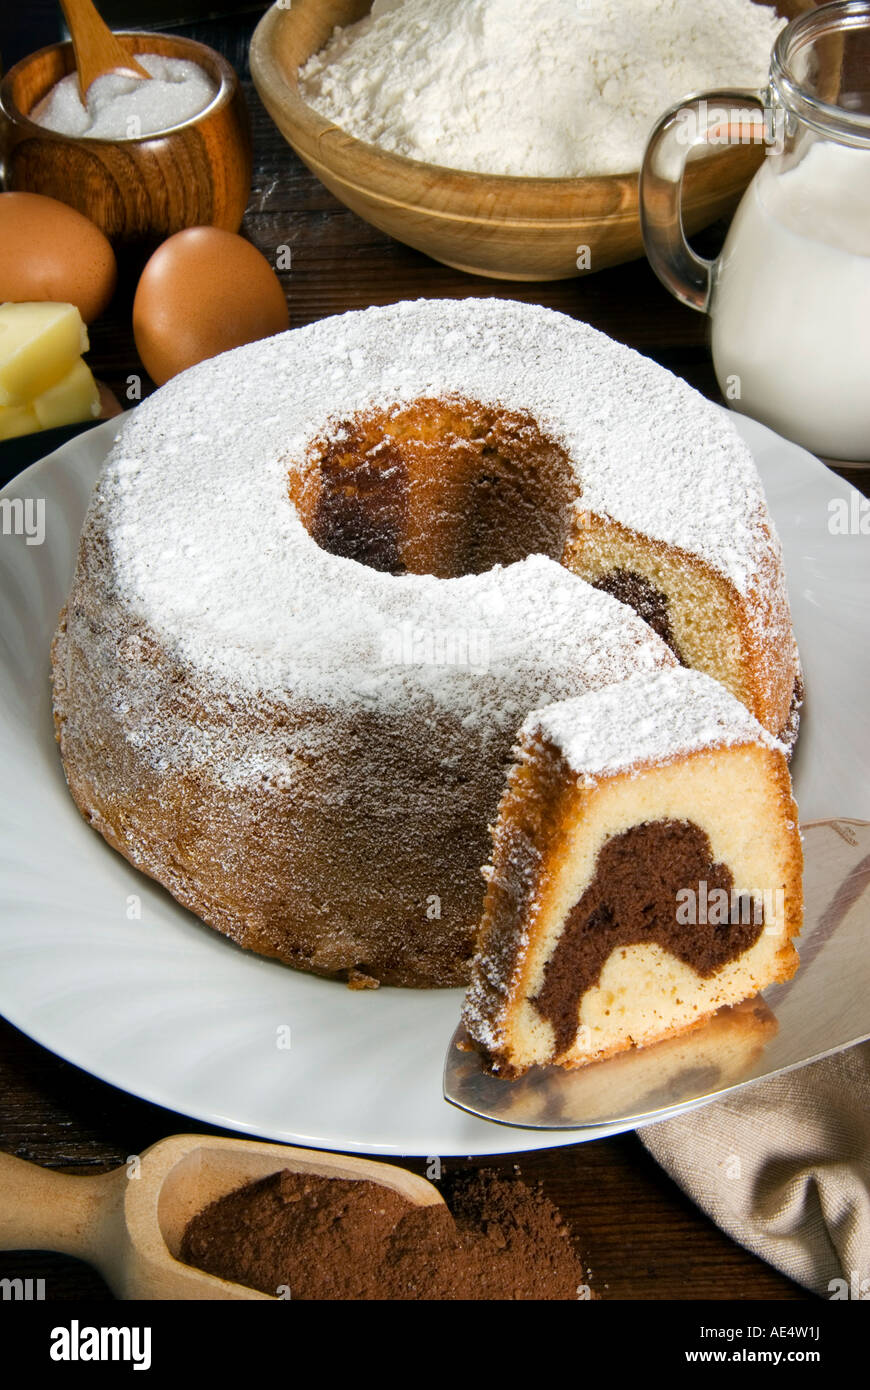 Cioccolato italiano a forma di anello torta, Italia, Europa Foto stock -  Alamy